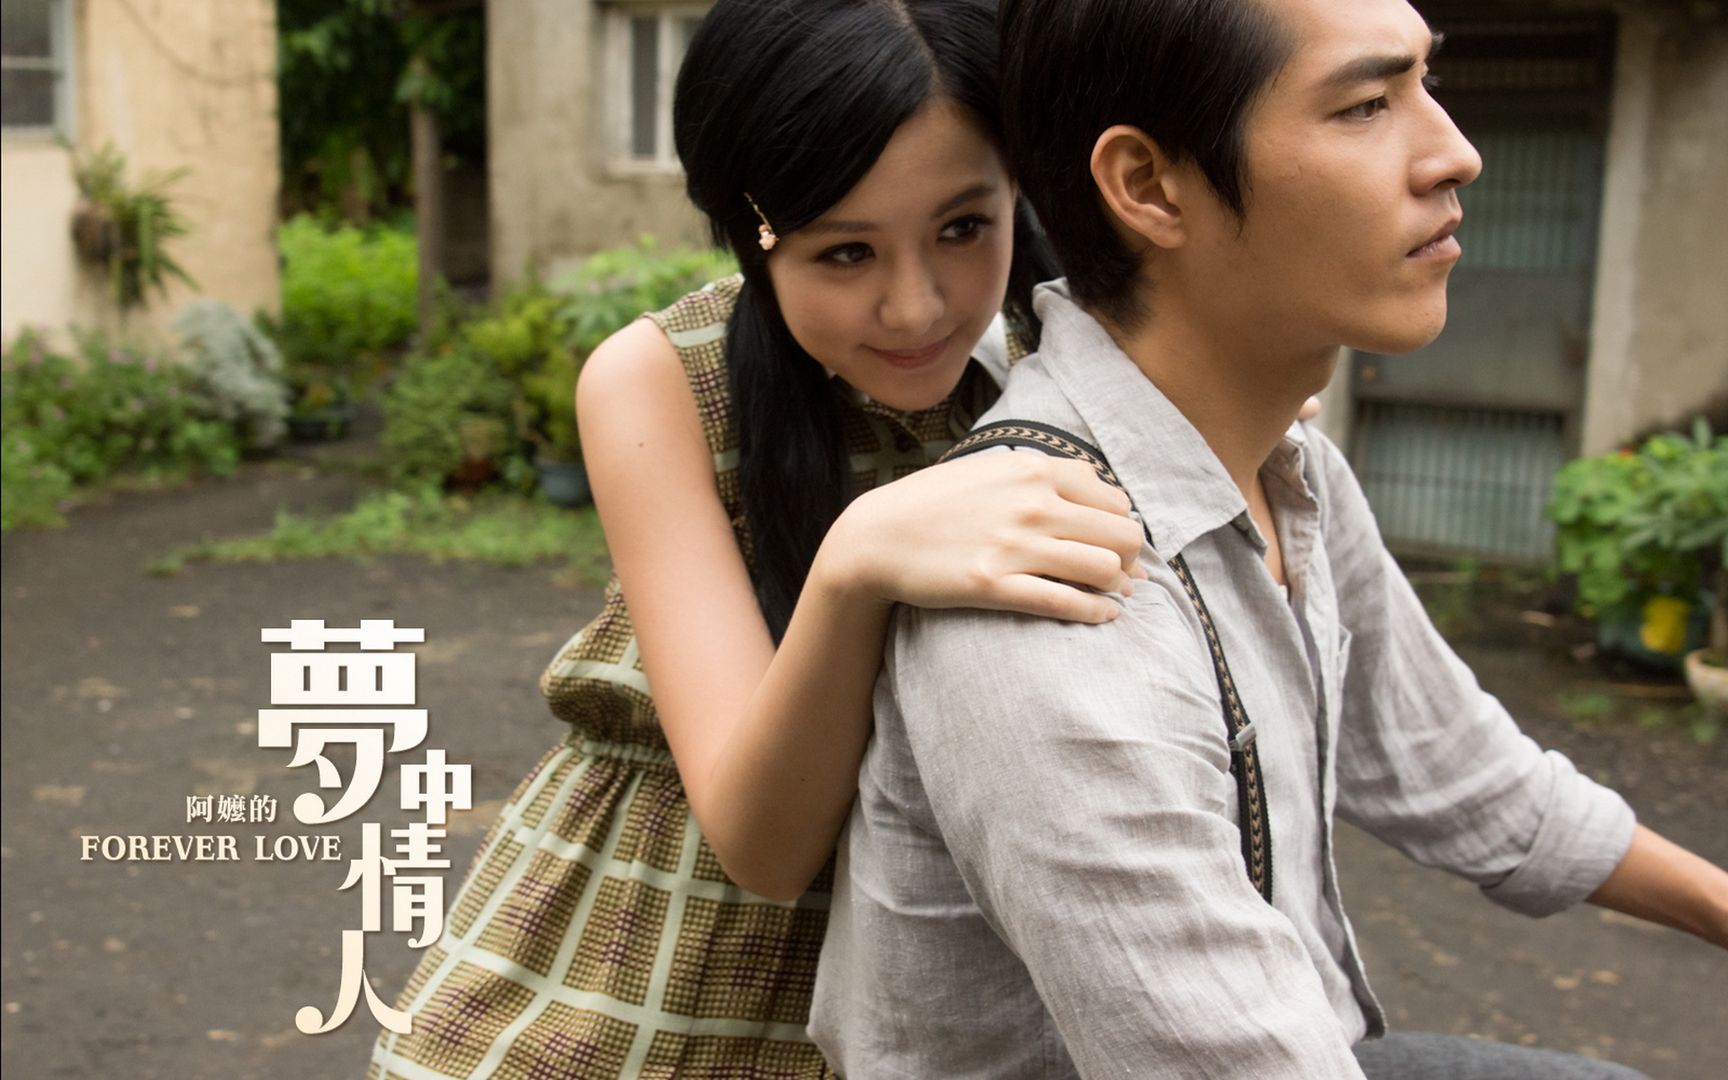 台湾爱情电影阿嬤的梦中情人宣传海报高清大图